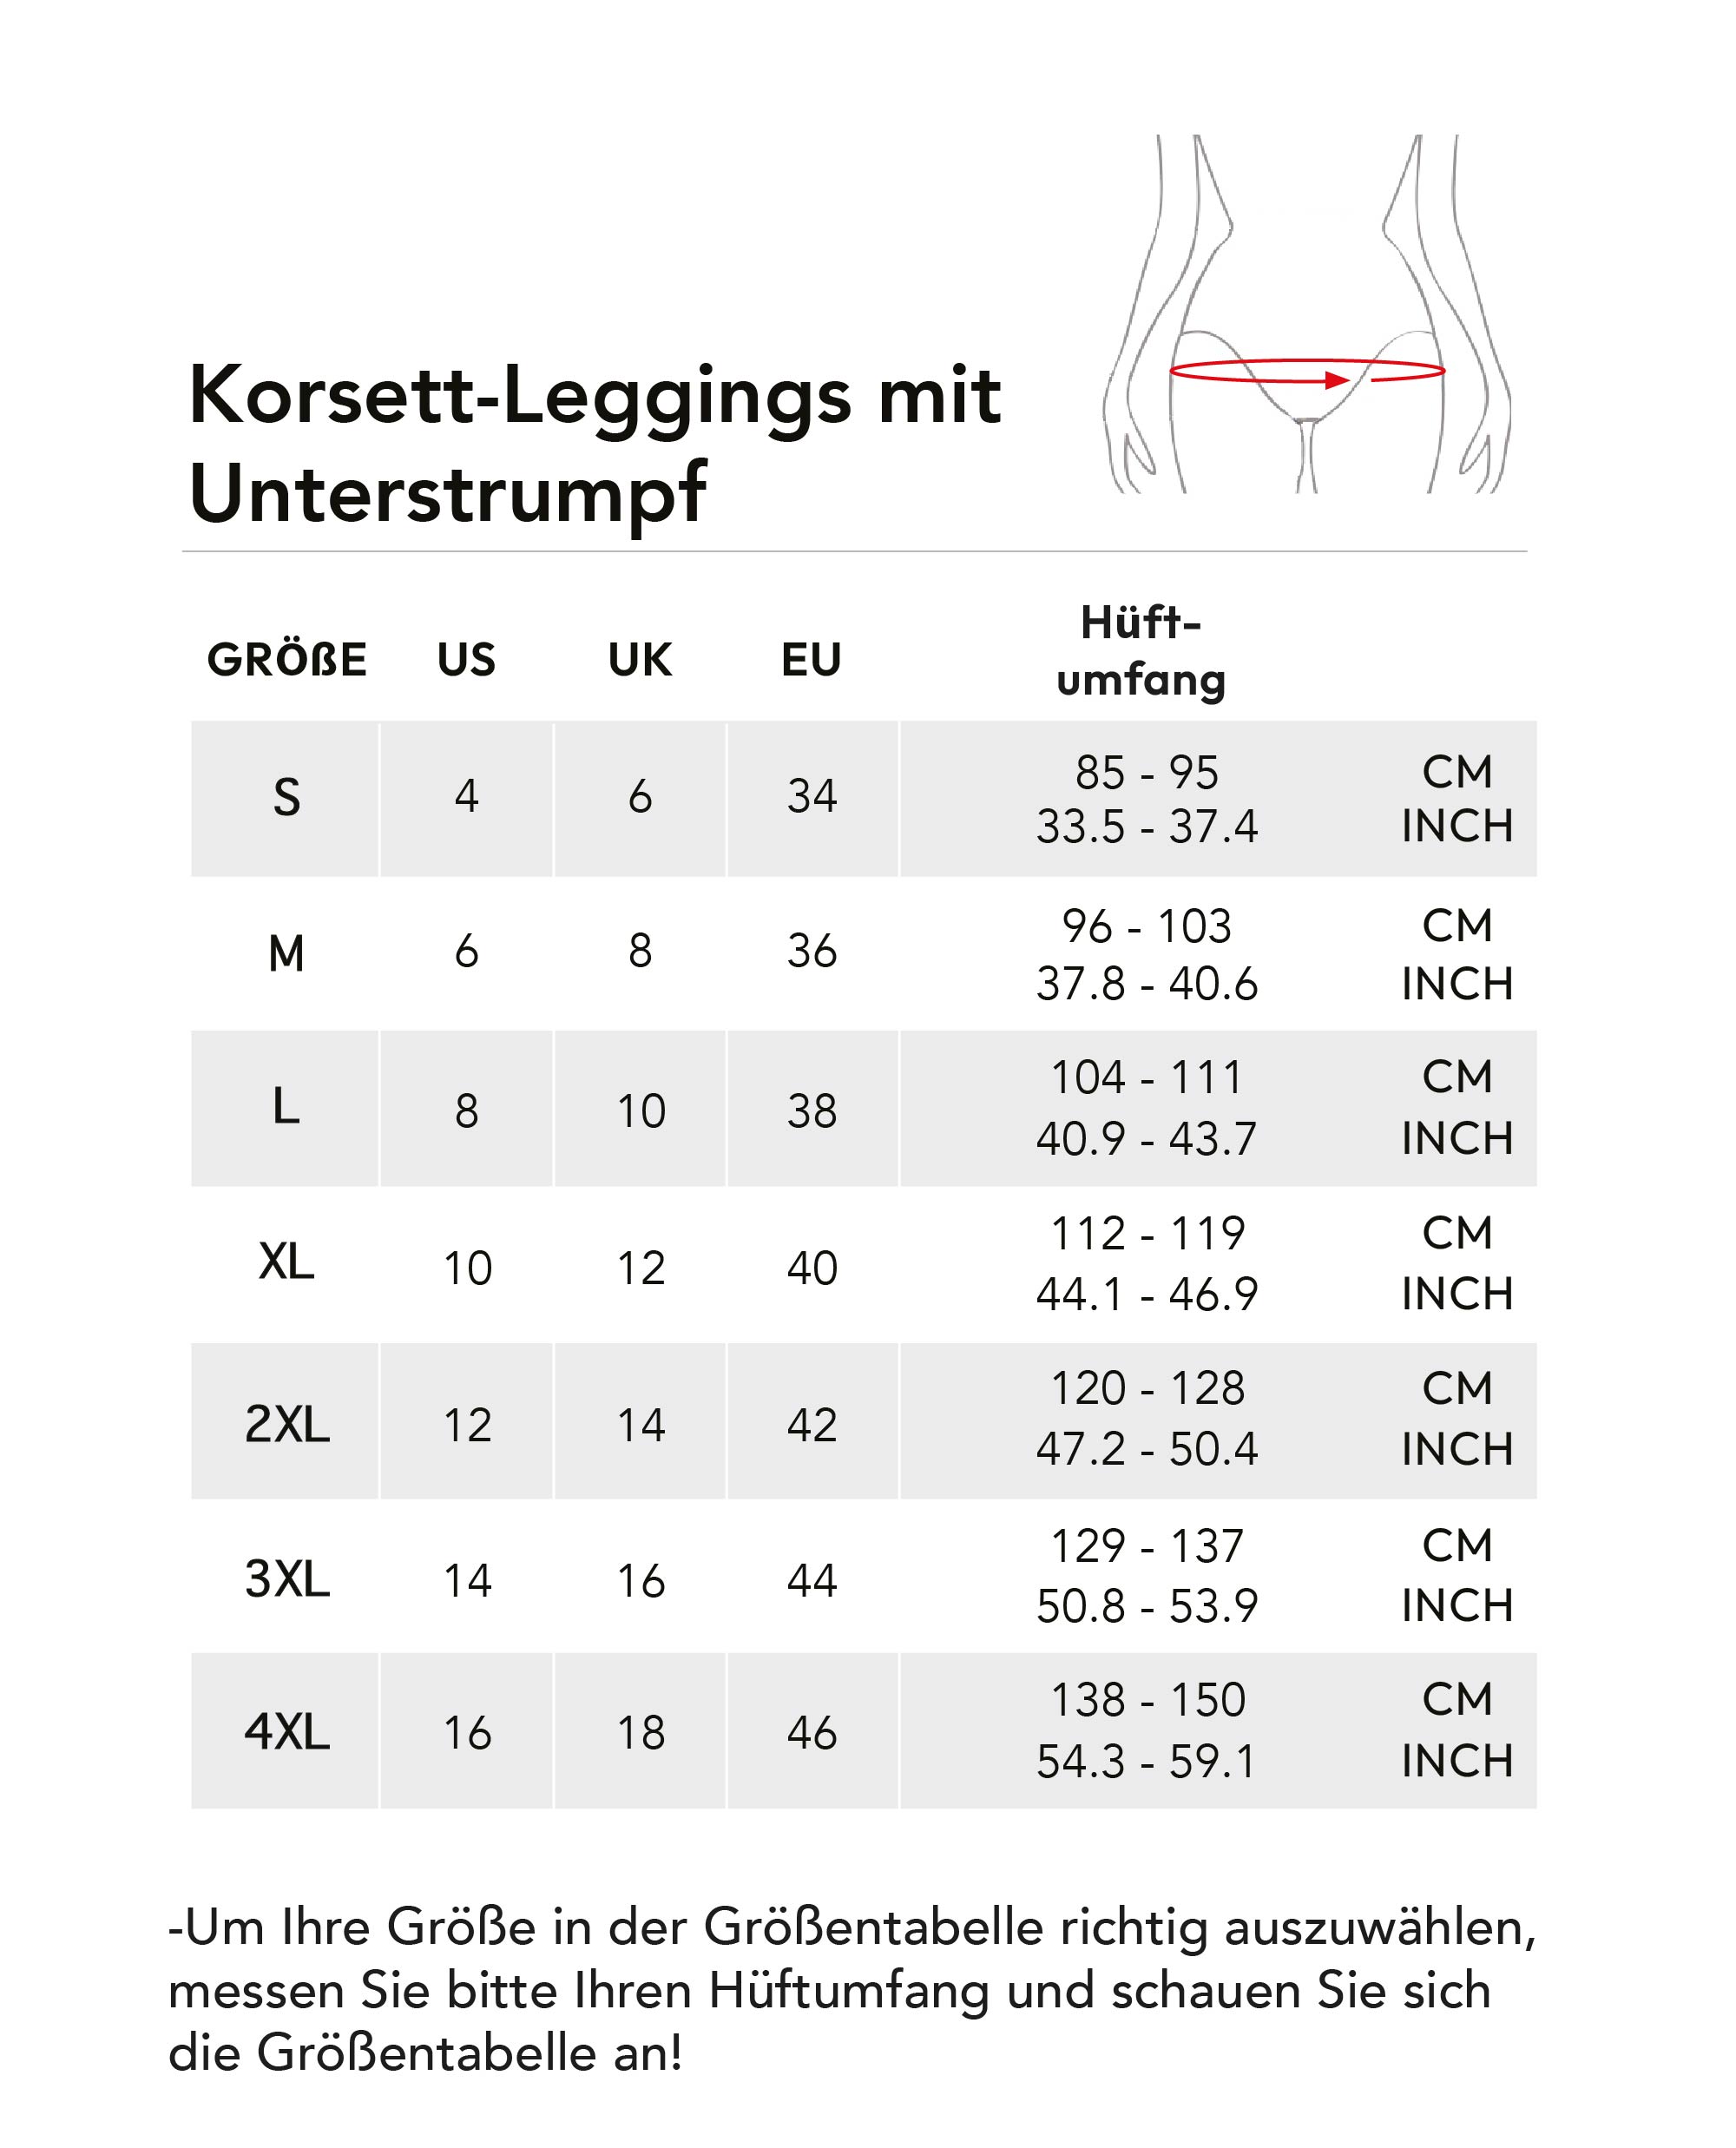 korsett-leggings-mit-unterstrumpf.jpg (246 KB)